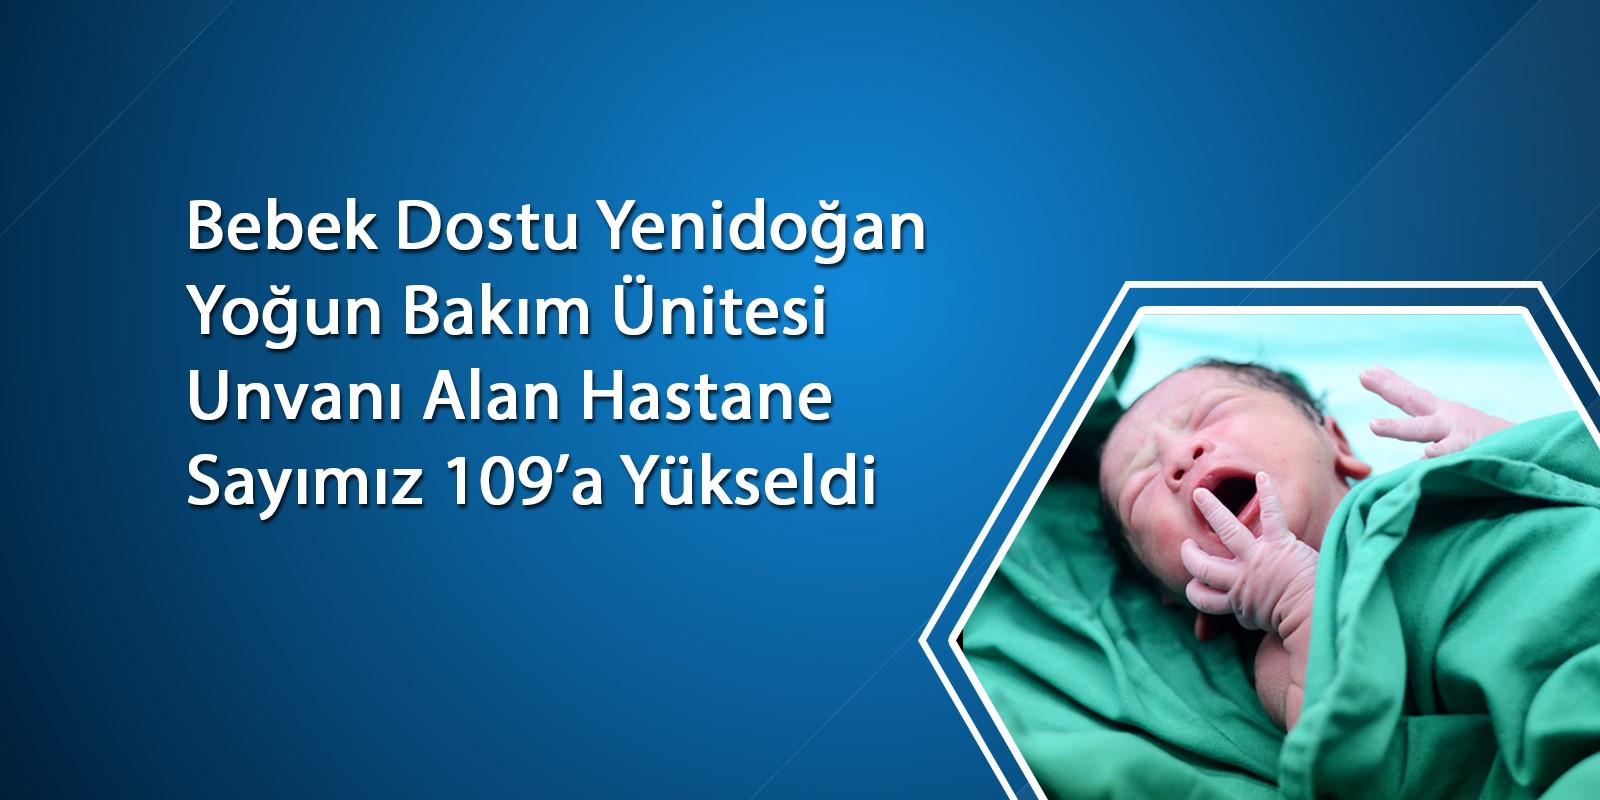 Bebek Dostu Yenidoğan Yoğun Bakım Ünitesi Unvanı Alan Hastane Sayımız 109’a Yükseldi